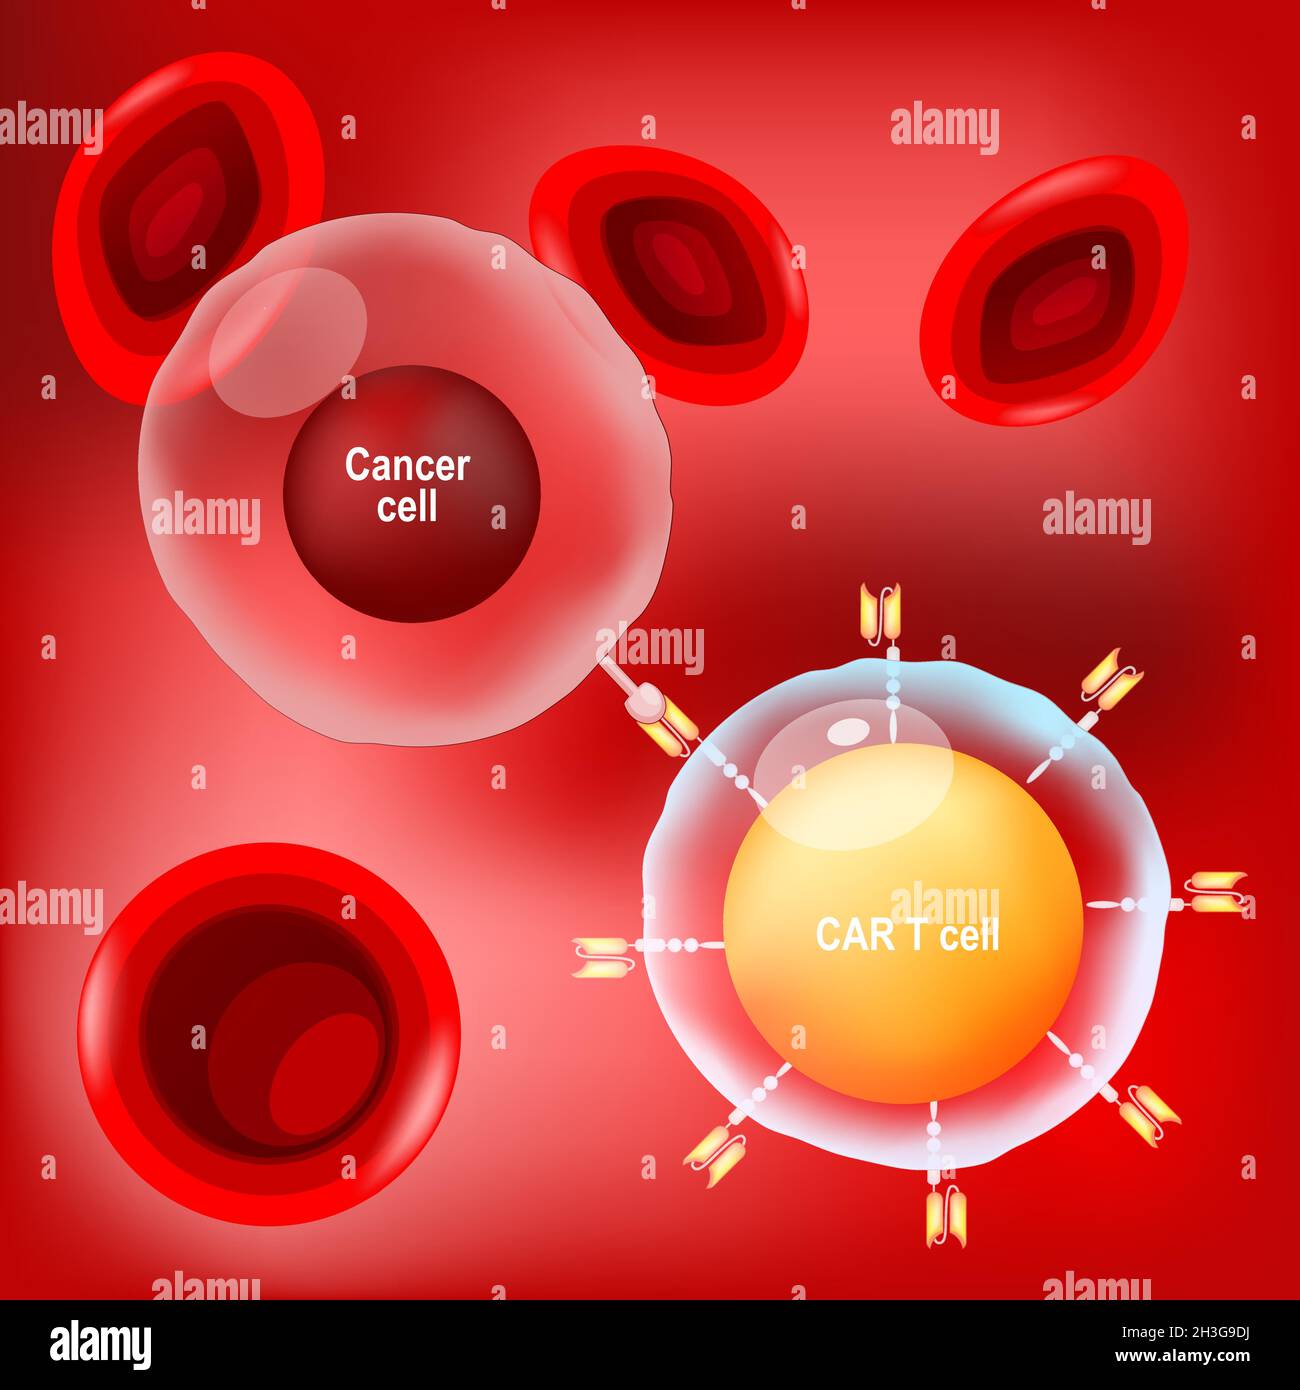 Cellule cancéreuse, CELLULE T DE LA VOITURE (lymphocyte) et globules rouges sur fond rouge. Affiche vectorielle sur l'immunothérapie ou la chimiothérapie cancer. Illustration de Vecteur